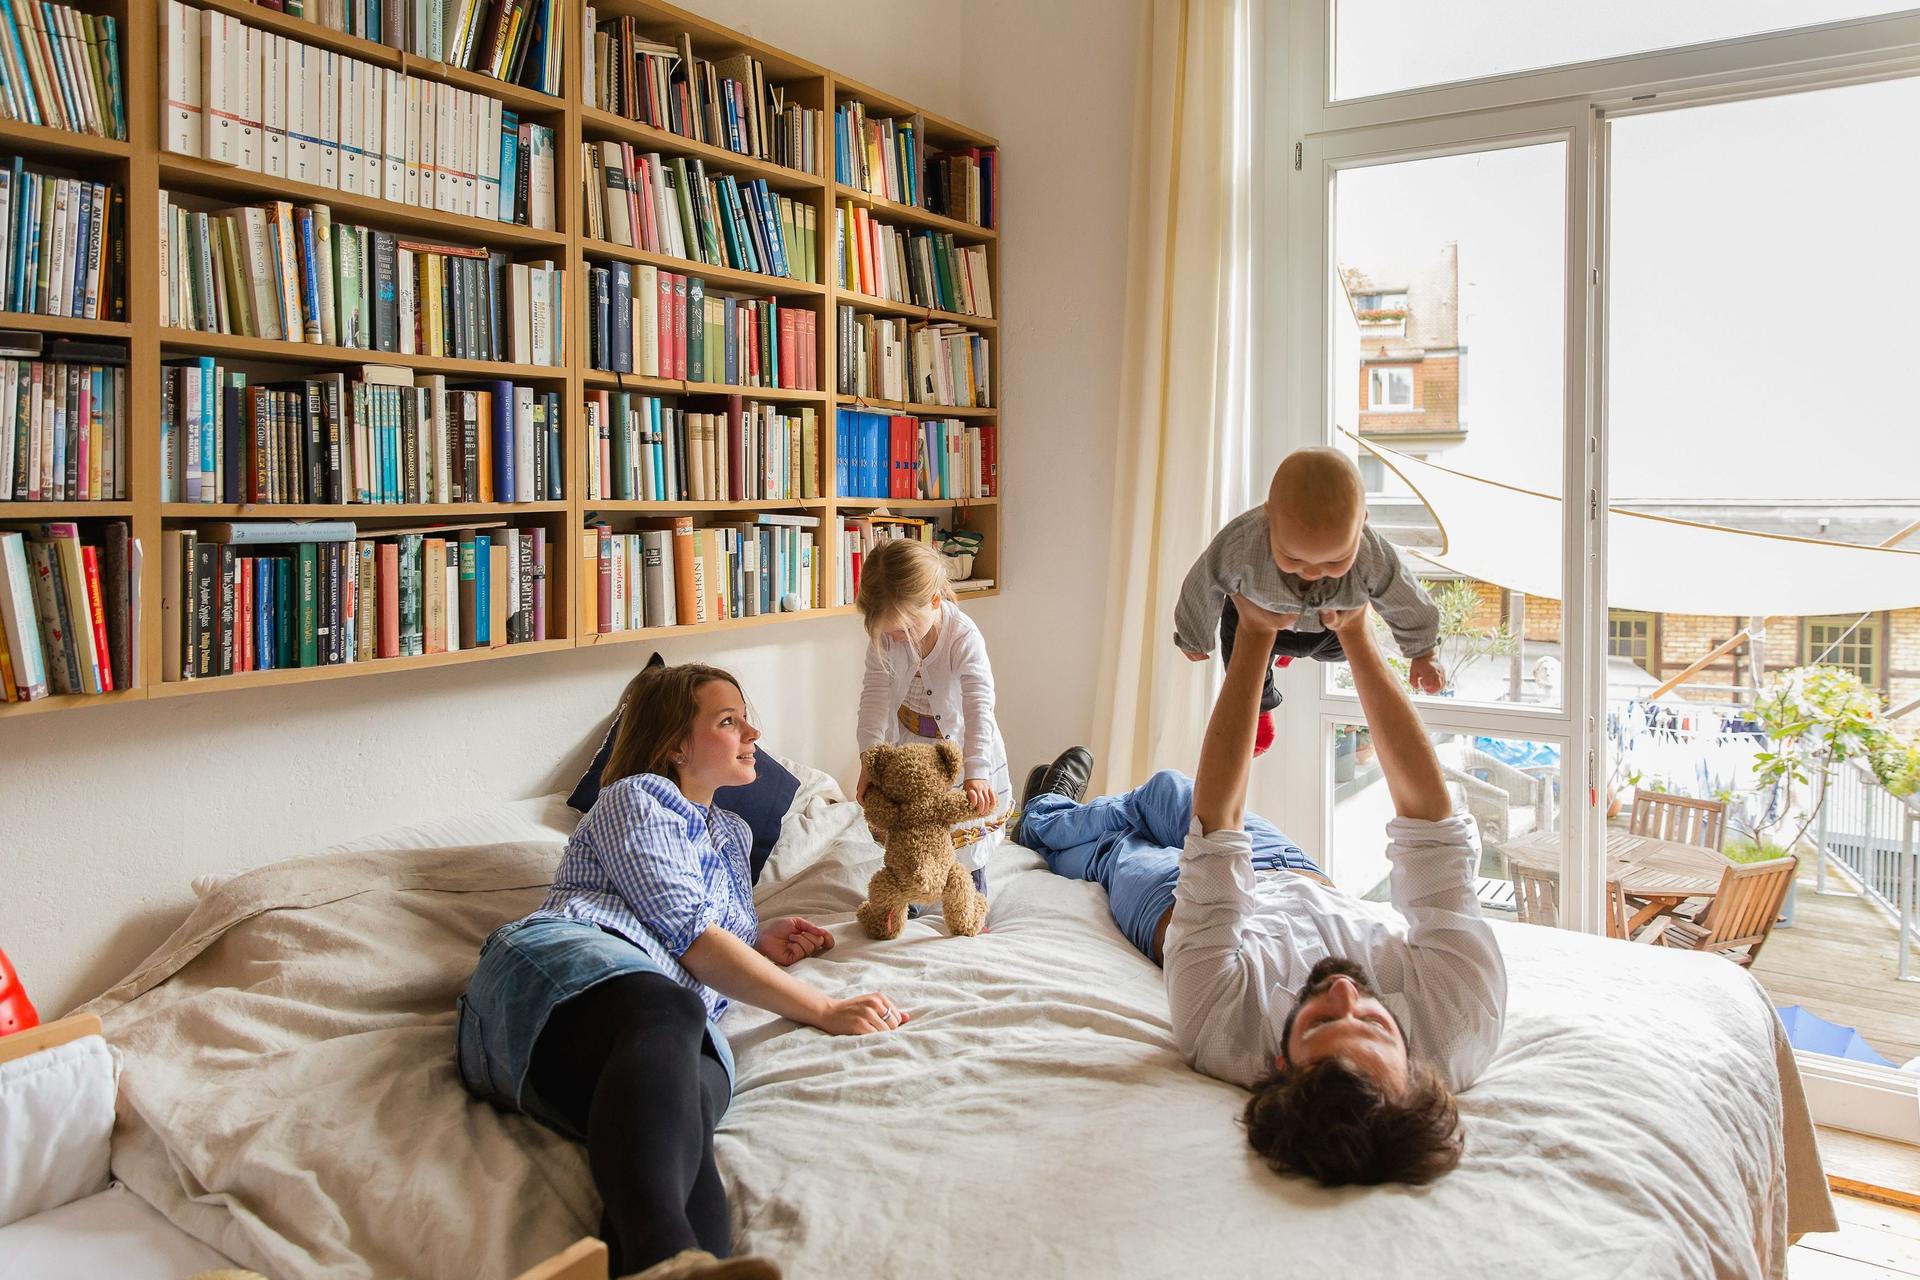 Eine vierköpfige Familie spielt zusammen auf einem Bett. Über dem Bett hängt ein großes Bücherregal.